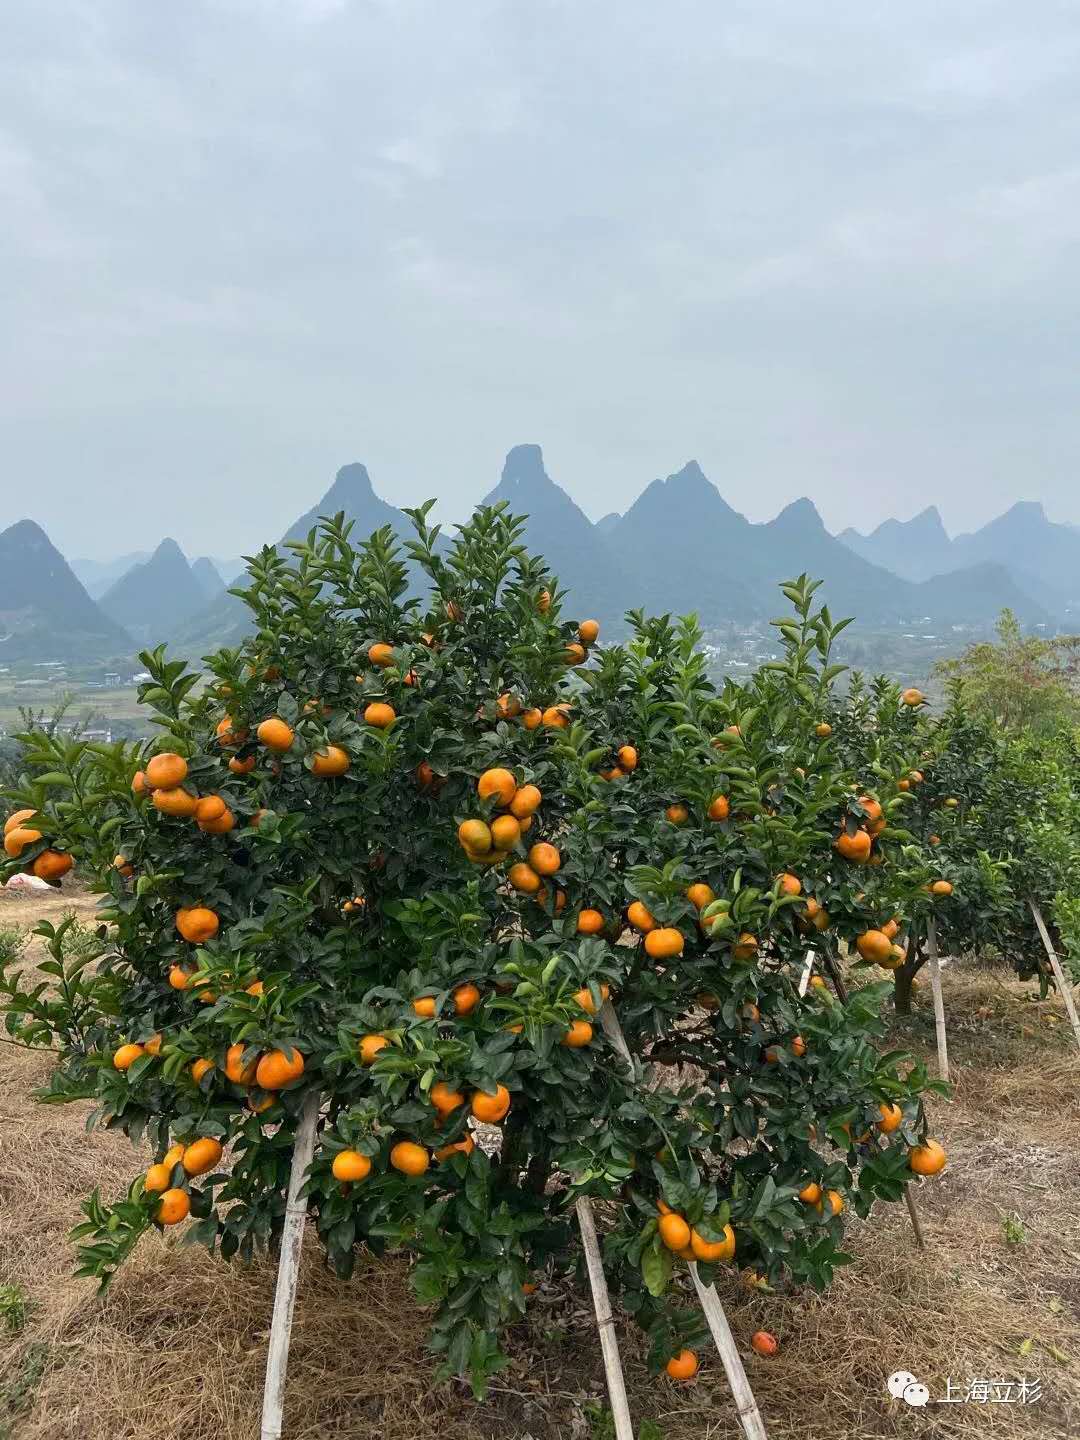 立杉炭基肥助力柑橘增产增收2